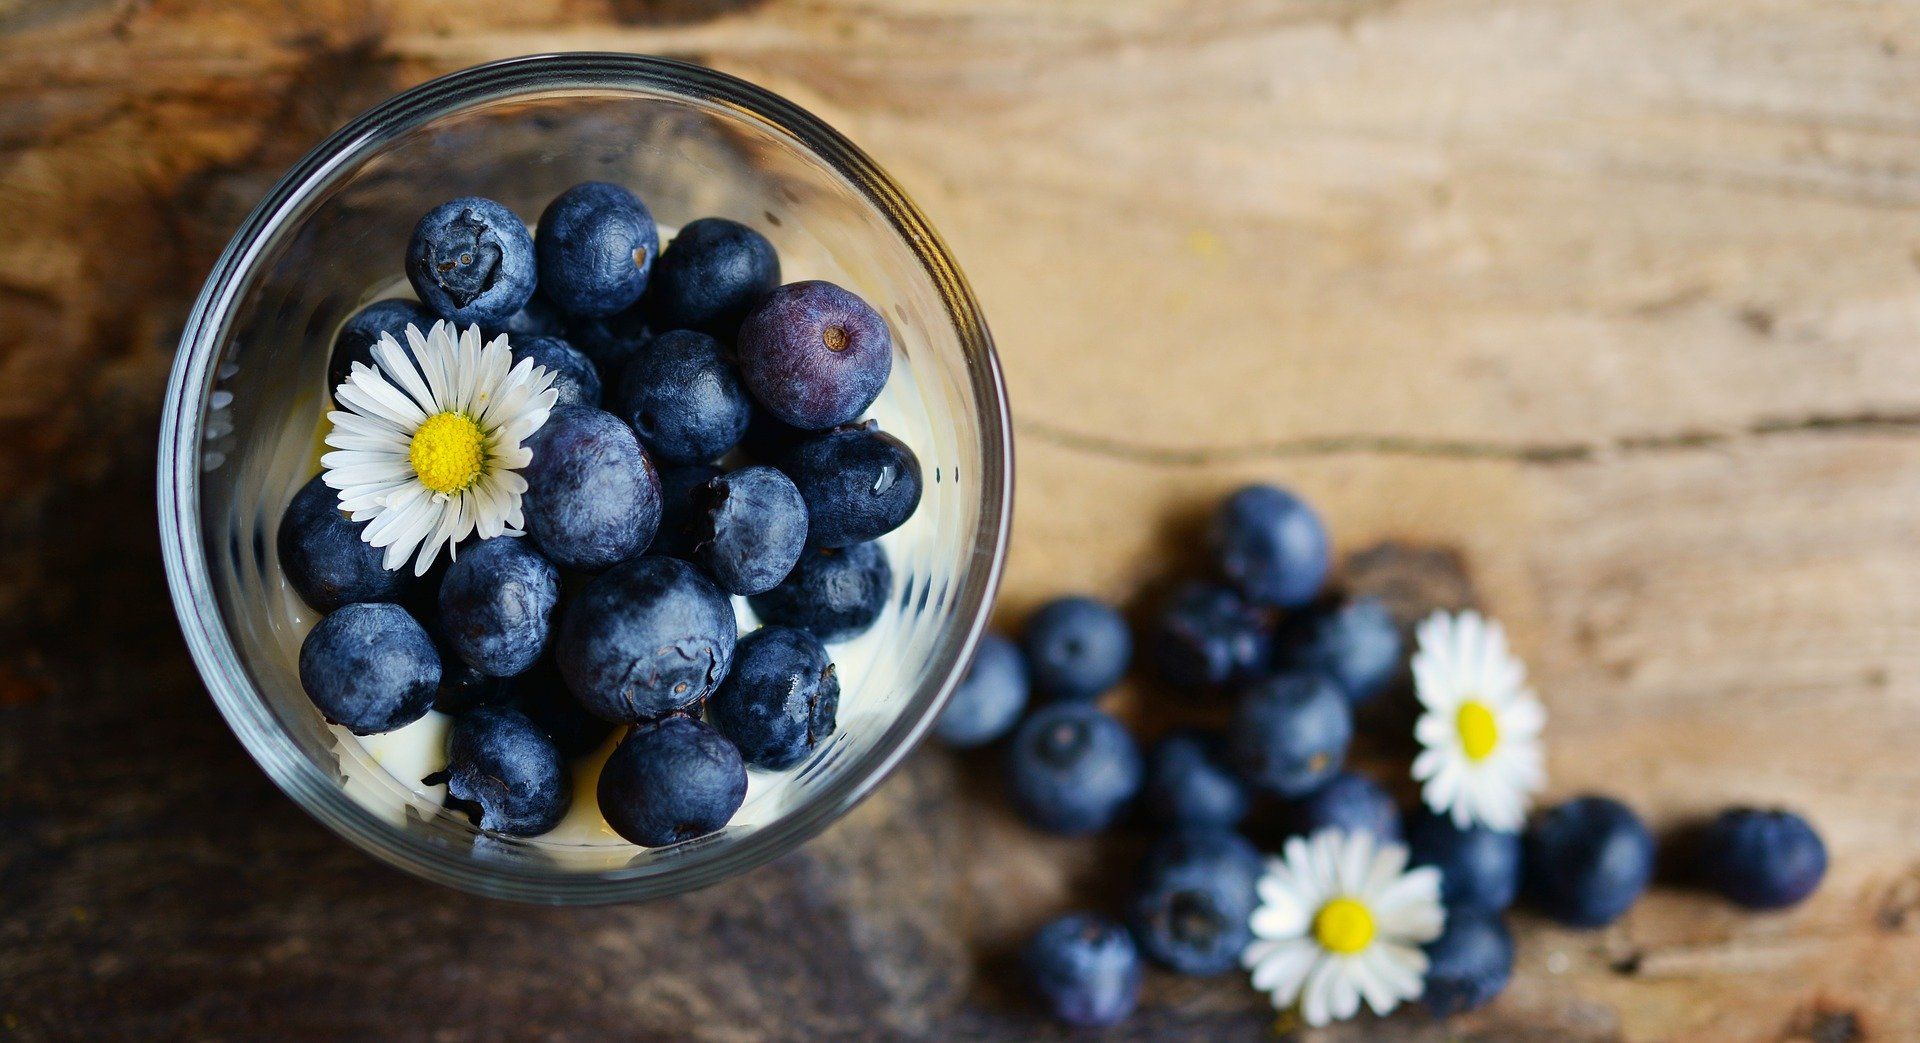 Manfaat Blueberry untuk menurunkan kadar kolesterol dan juga gula darah. Jenis buah berry lain juga memiliki manfaat yang sama.*